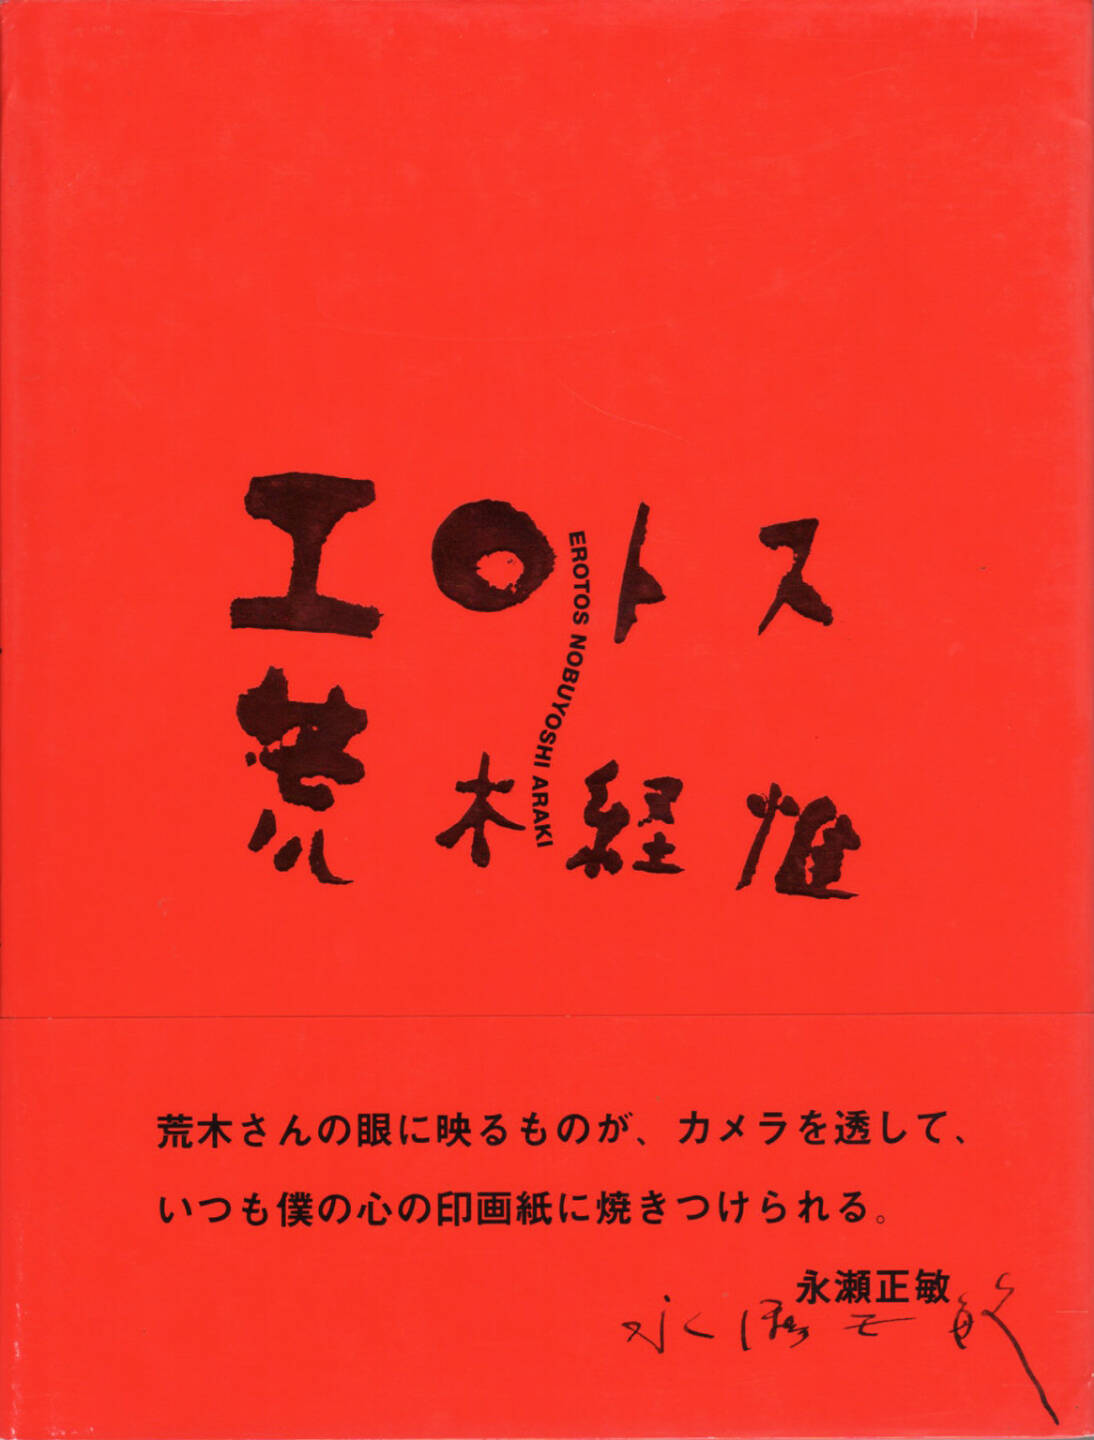 Nobuyoshi Araki - Erotos (荒木経惟 エロトス), Libro Port 1993, Cover - http://josefchladek.com/book/nobuyoshi_araki_-_erotos_荒木経惟_エロトス